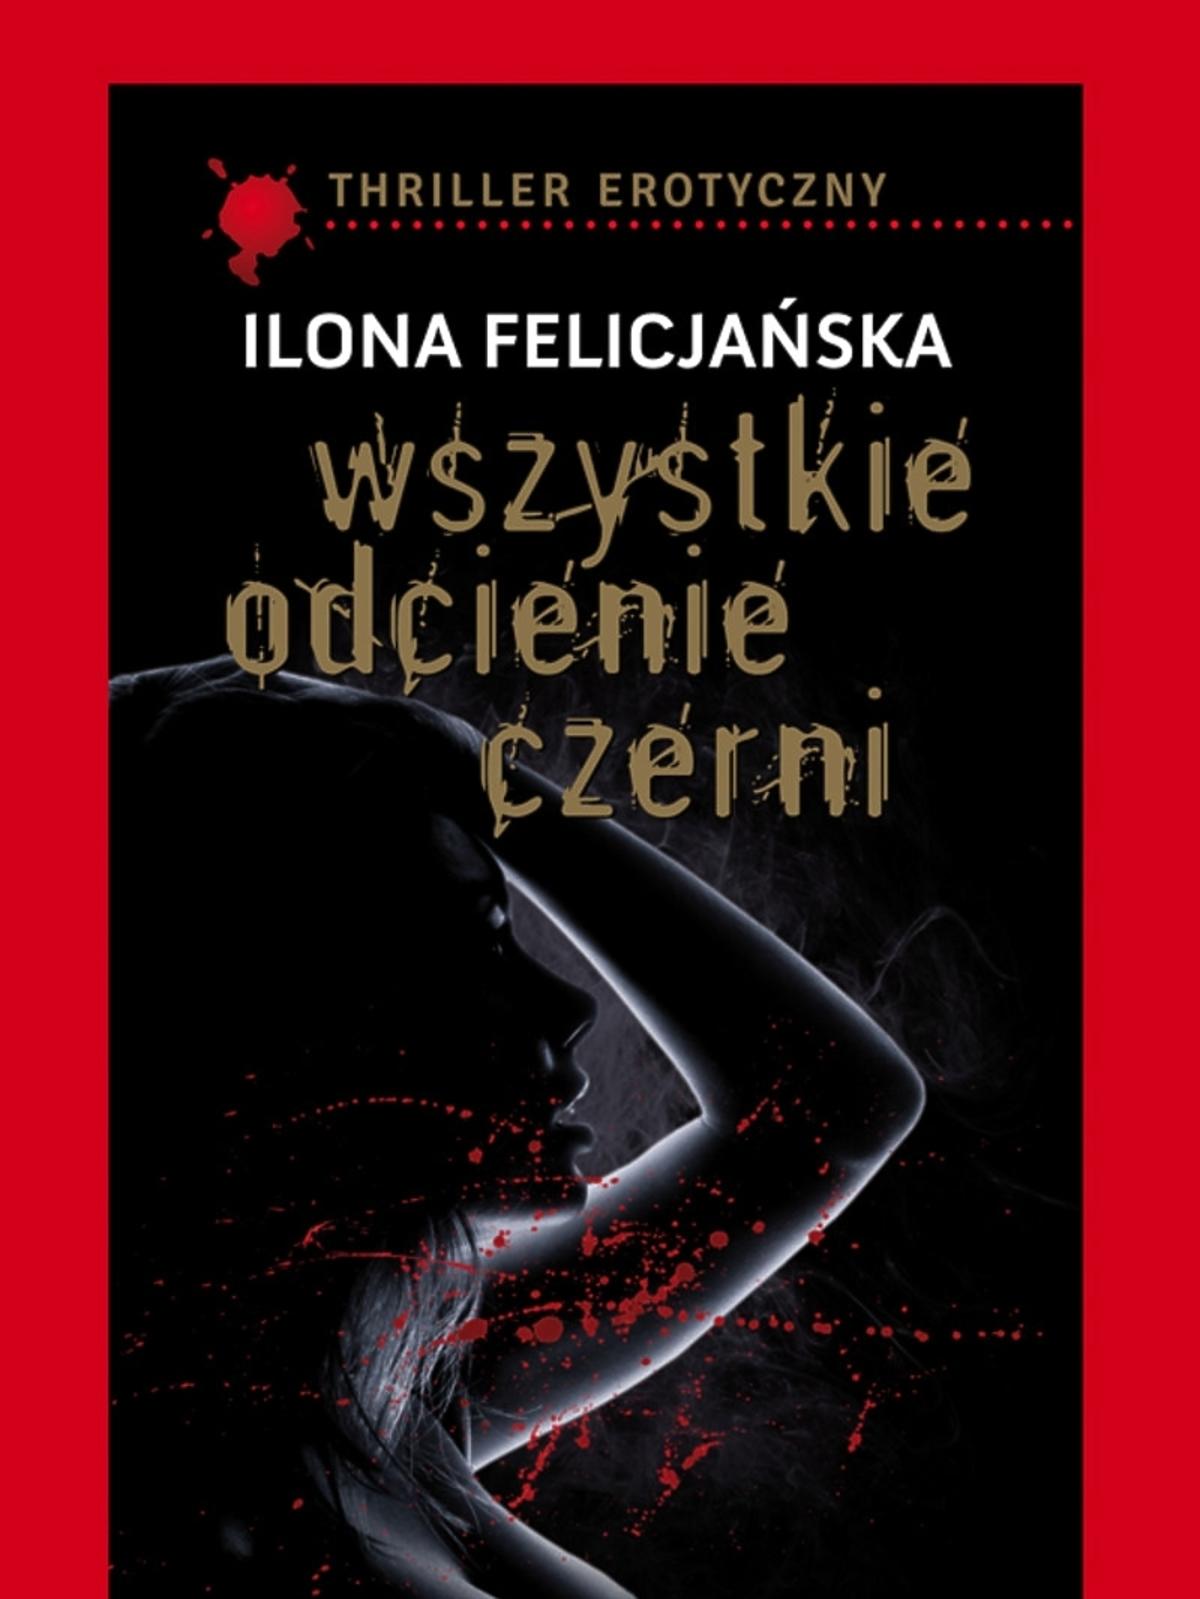 Książka Ilony Felicjańskiej 